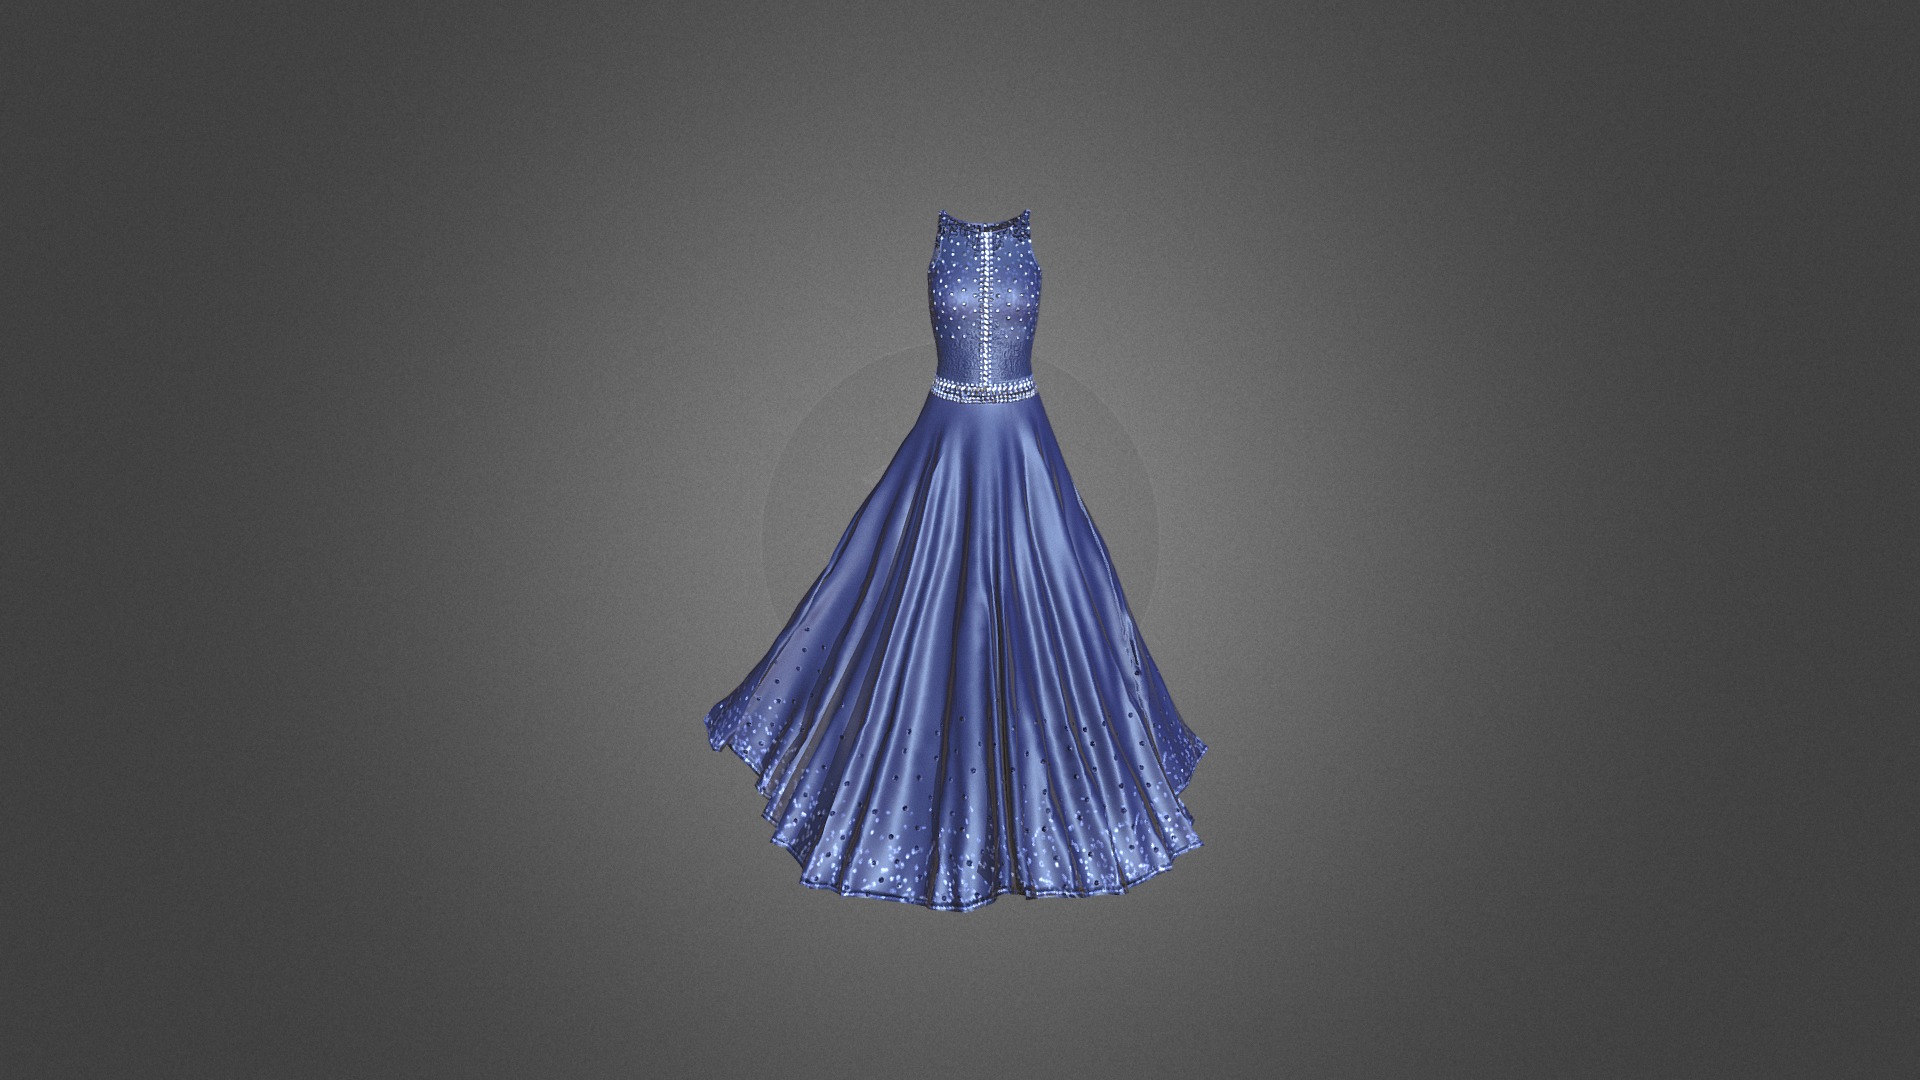 FloorLength_Dress1 - 3D model by Sumeet Arora (@ls.rightbrain) 3d model